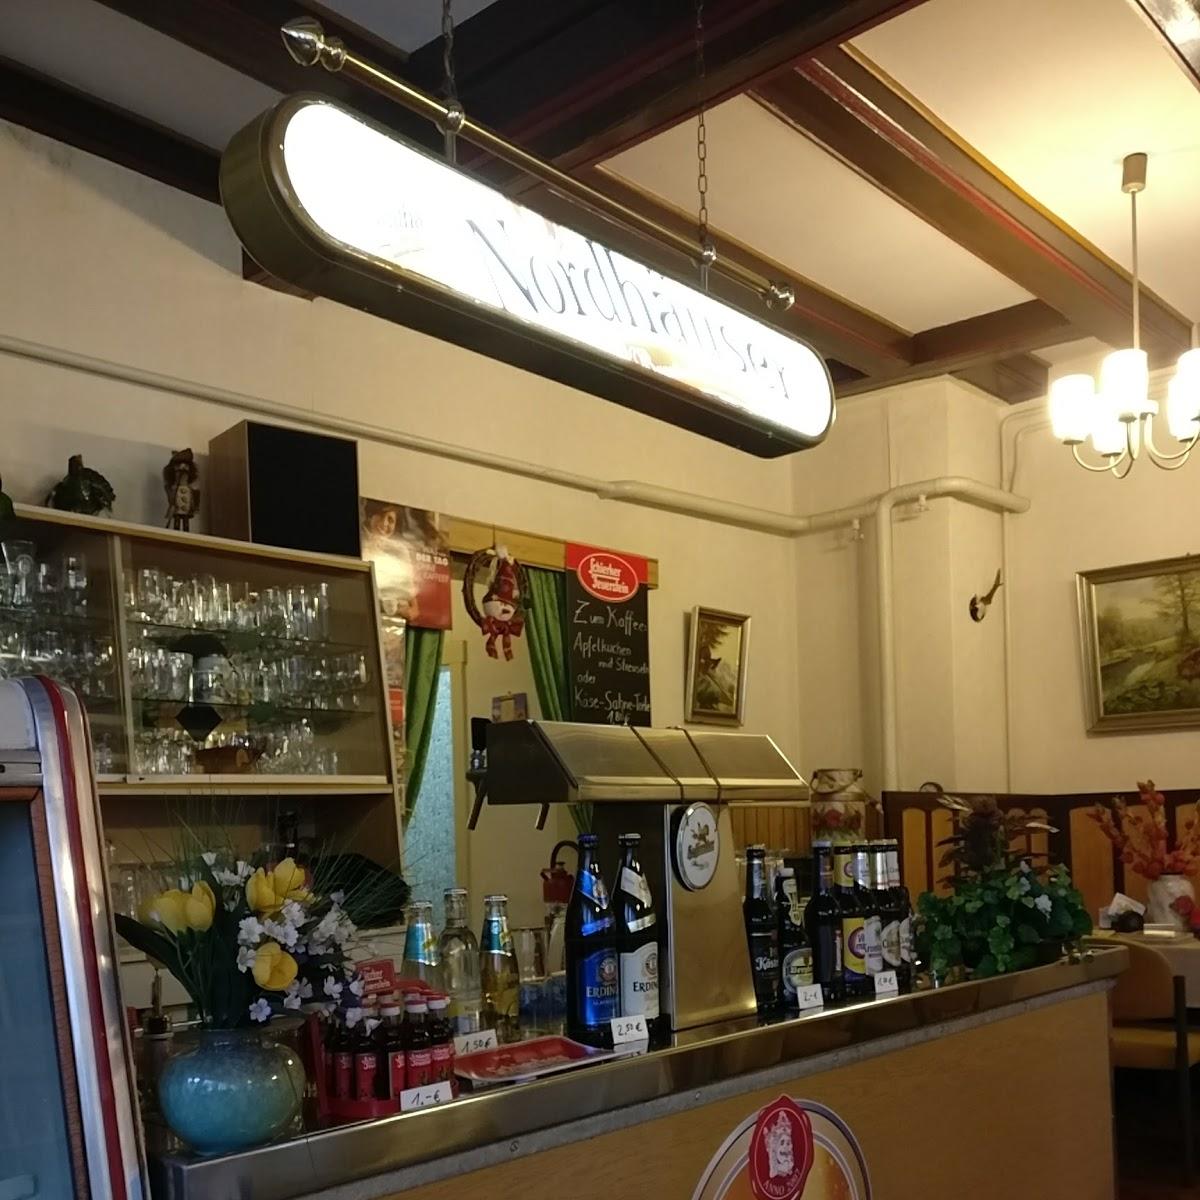 Restaurant "Gaststätte Zur Harzbahn" in Harztor